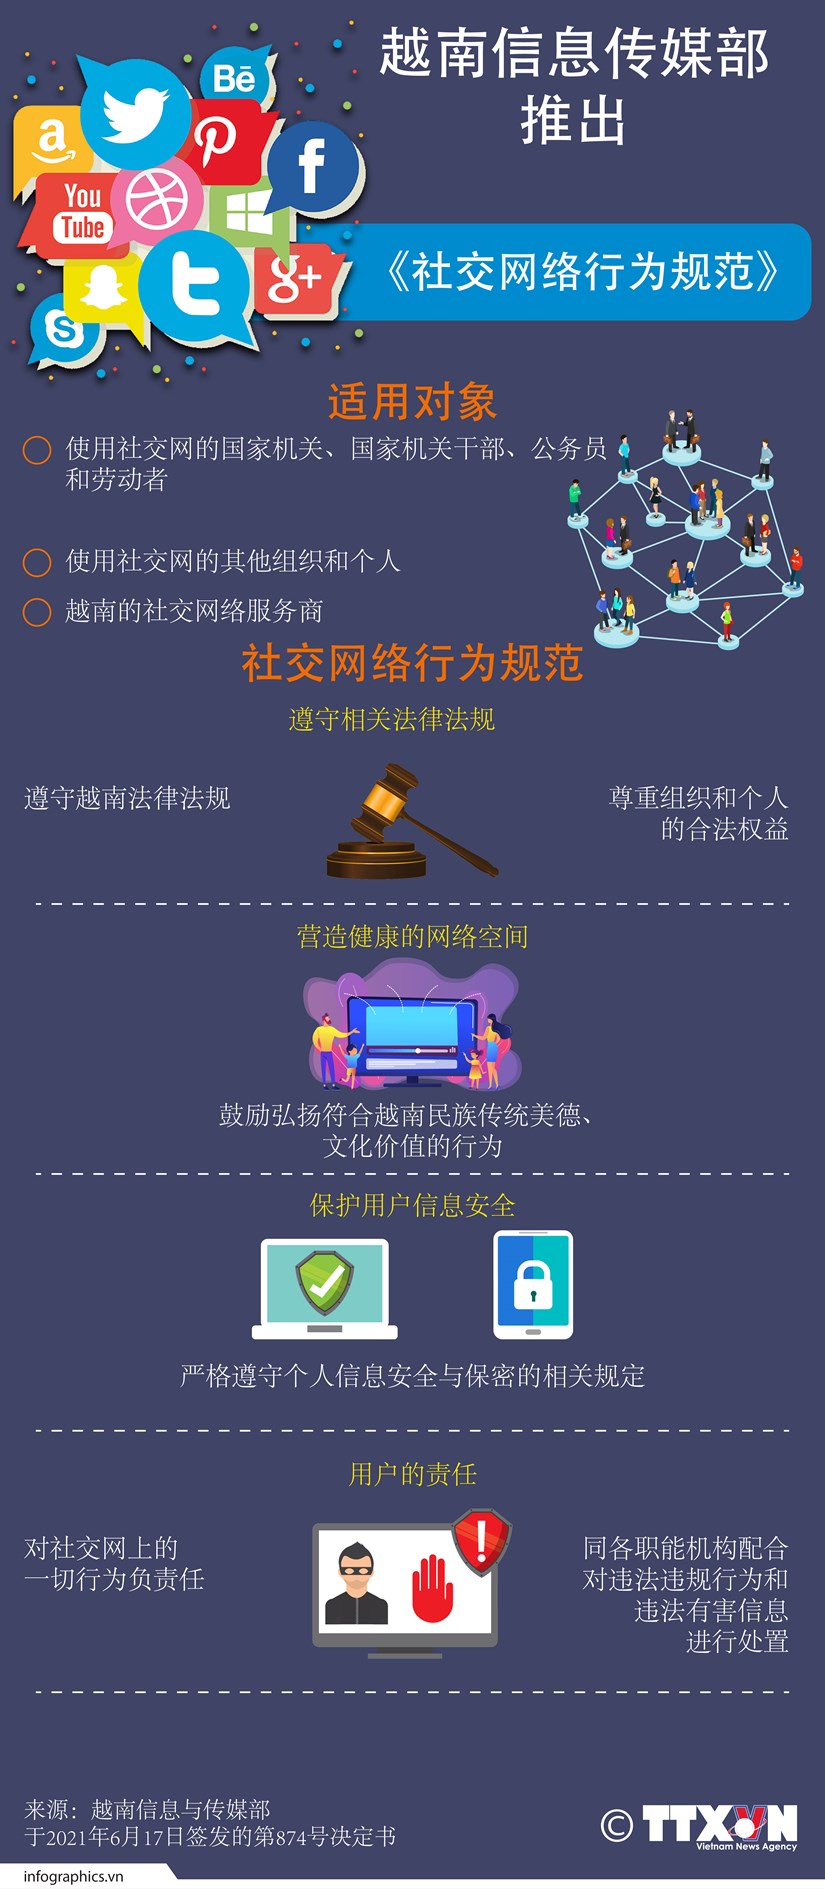 图表新闻：越南信息传媒部推出《社交网络行为规范》 hinh anh 1